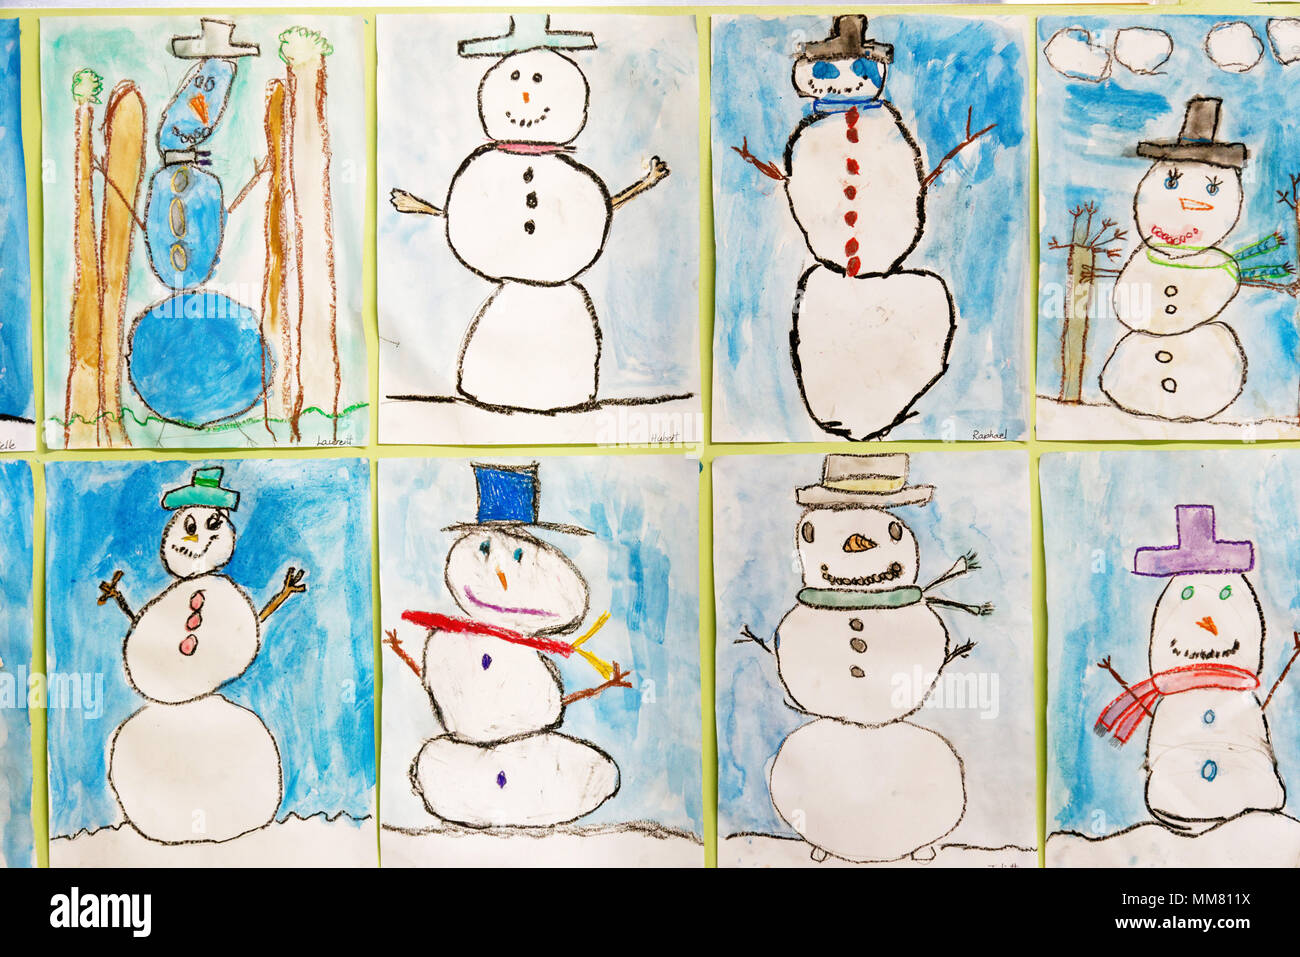 Kinder von Kunstwerken an den Wänden, in ihrer Schule - Bilder der Schneemänner Stockfoto